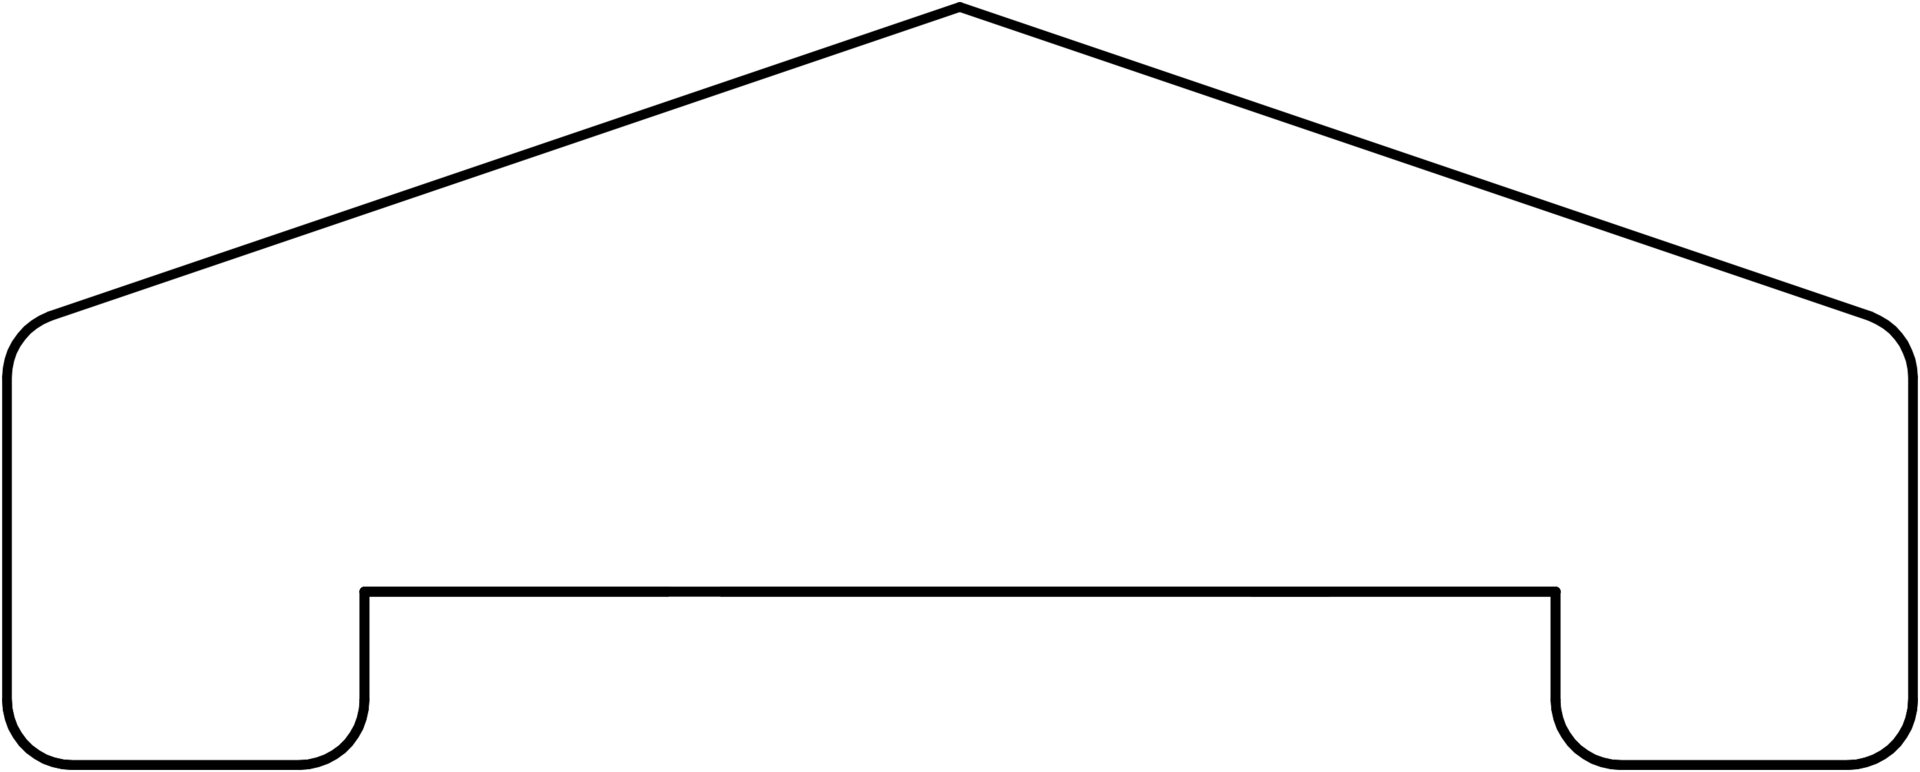 Afdekregel piramide hardhout 180cm